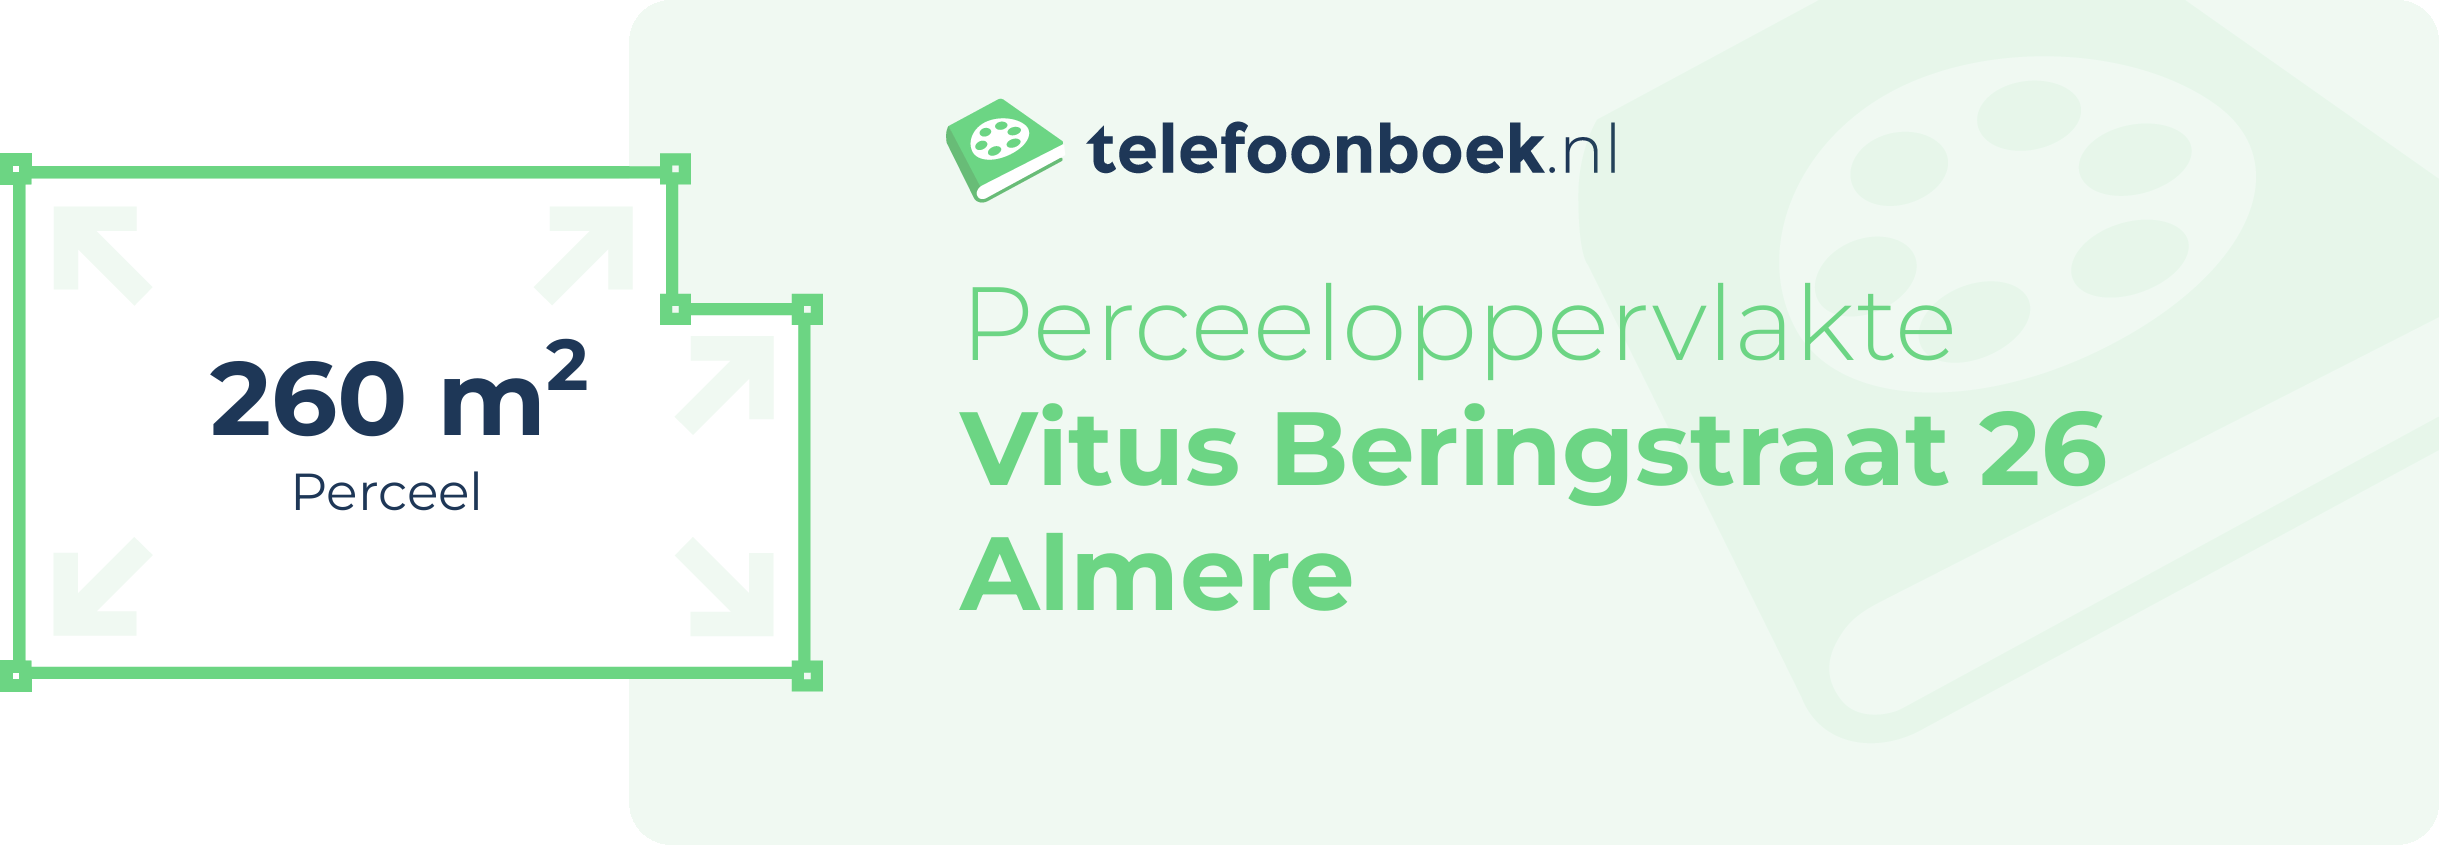 Perceeloppervlakte Vitus Beringstraat 26 Almere